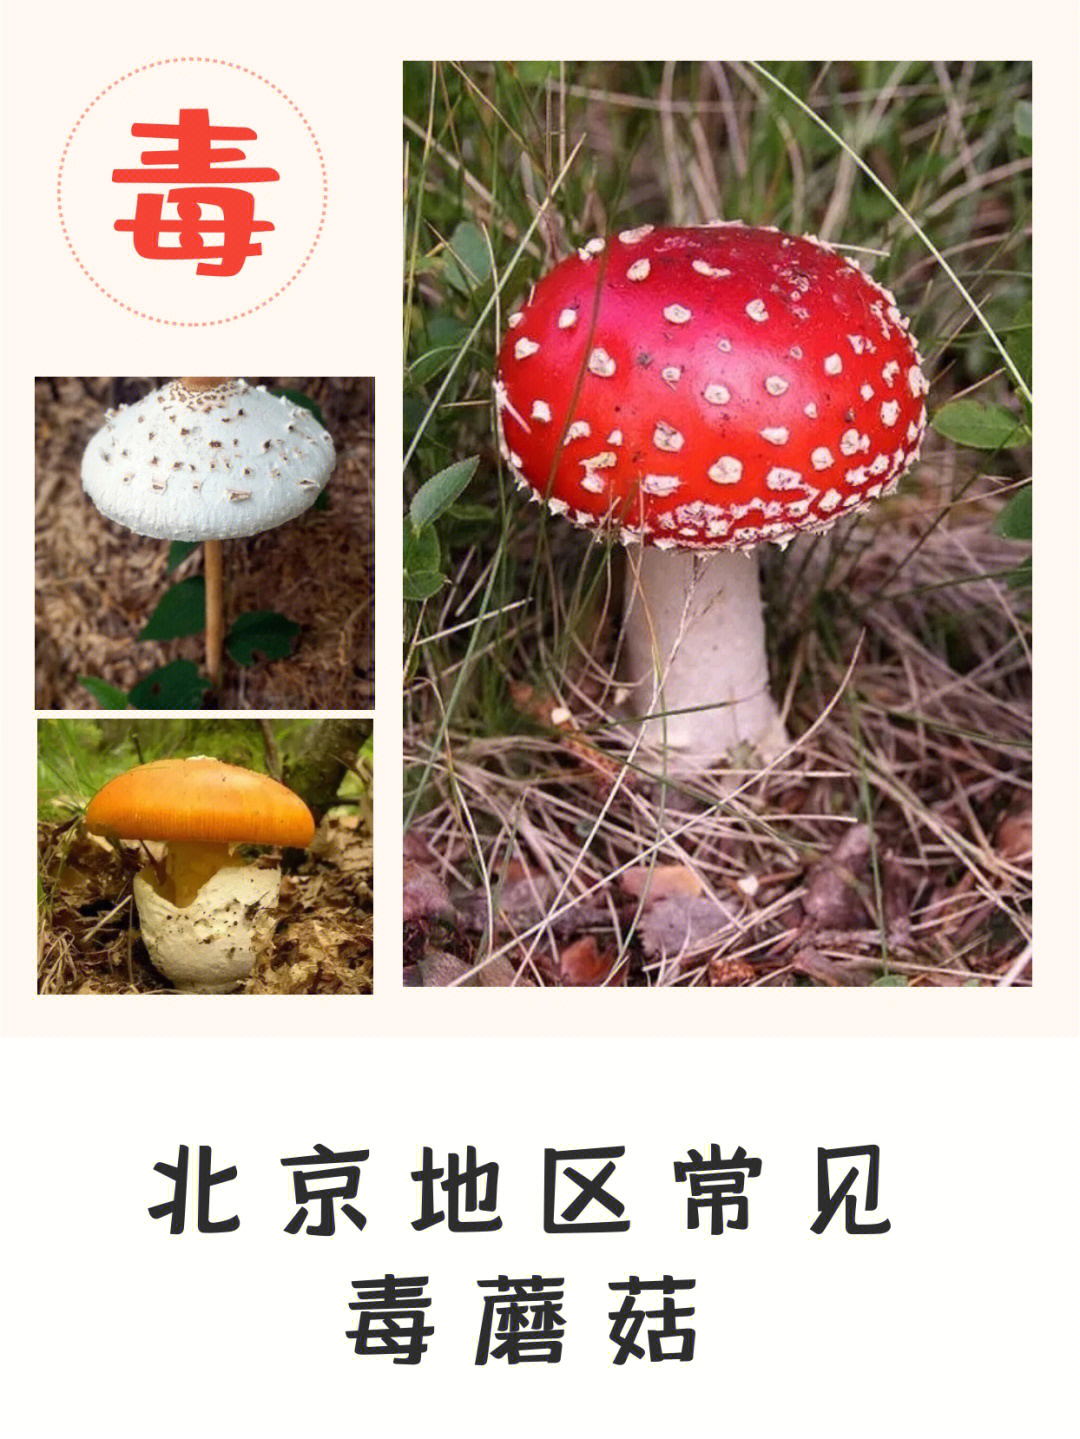 北京常见毒蘑菇勿采勿食谨防中毒